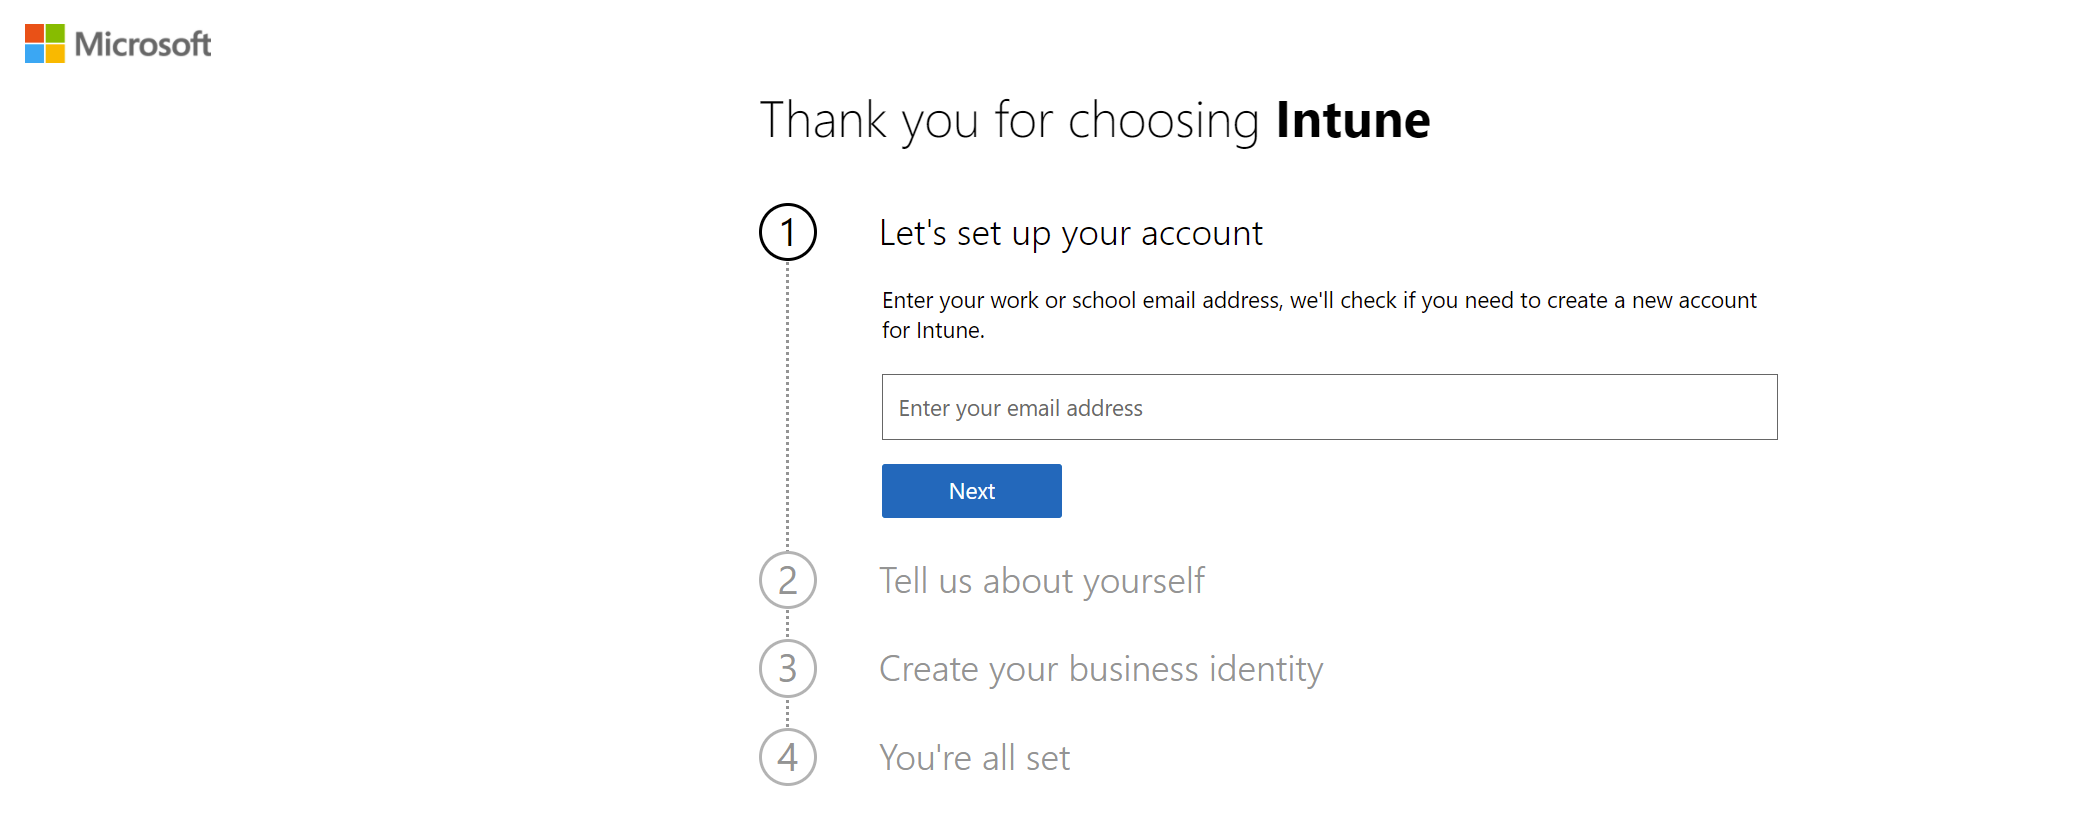 Microsoft Intune Deneme hesabı kaydolma web sayfasının ekran görüntüsü.